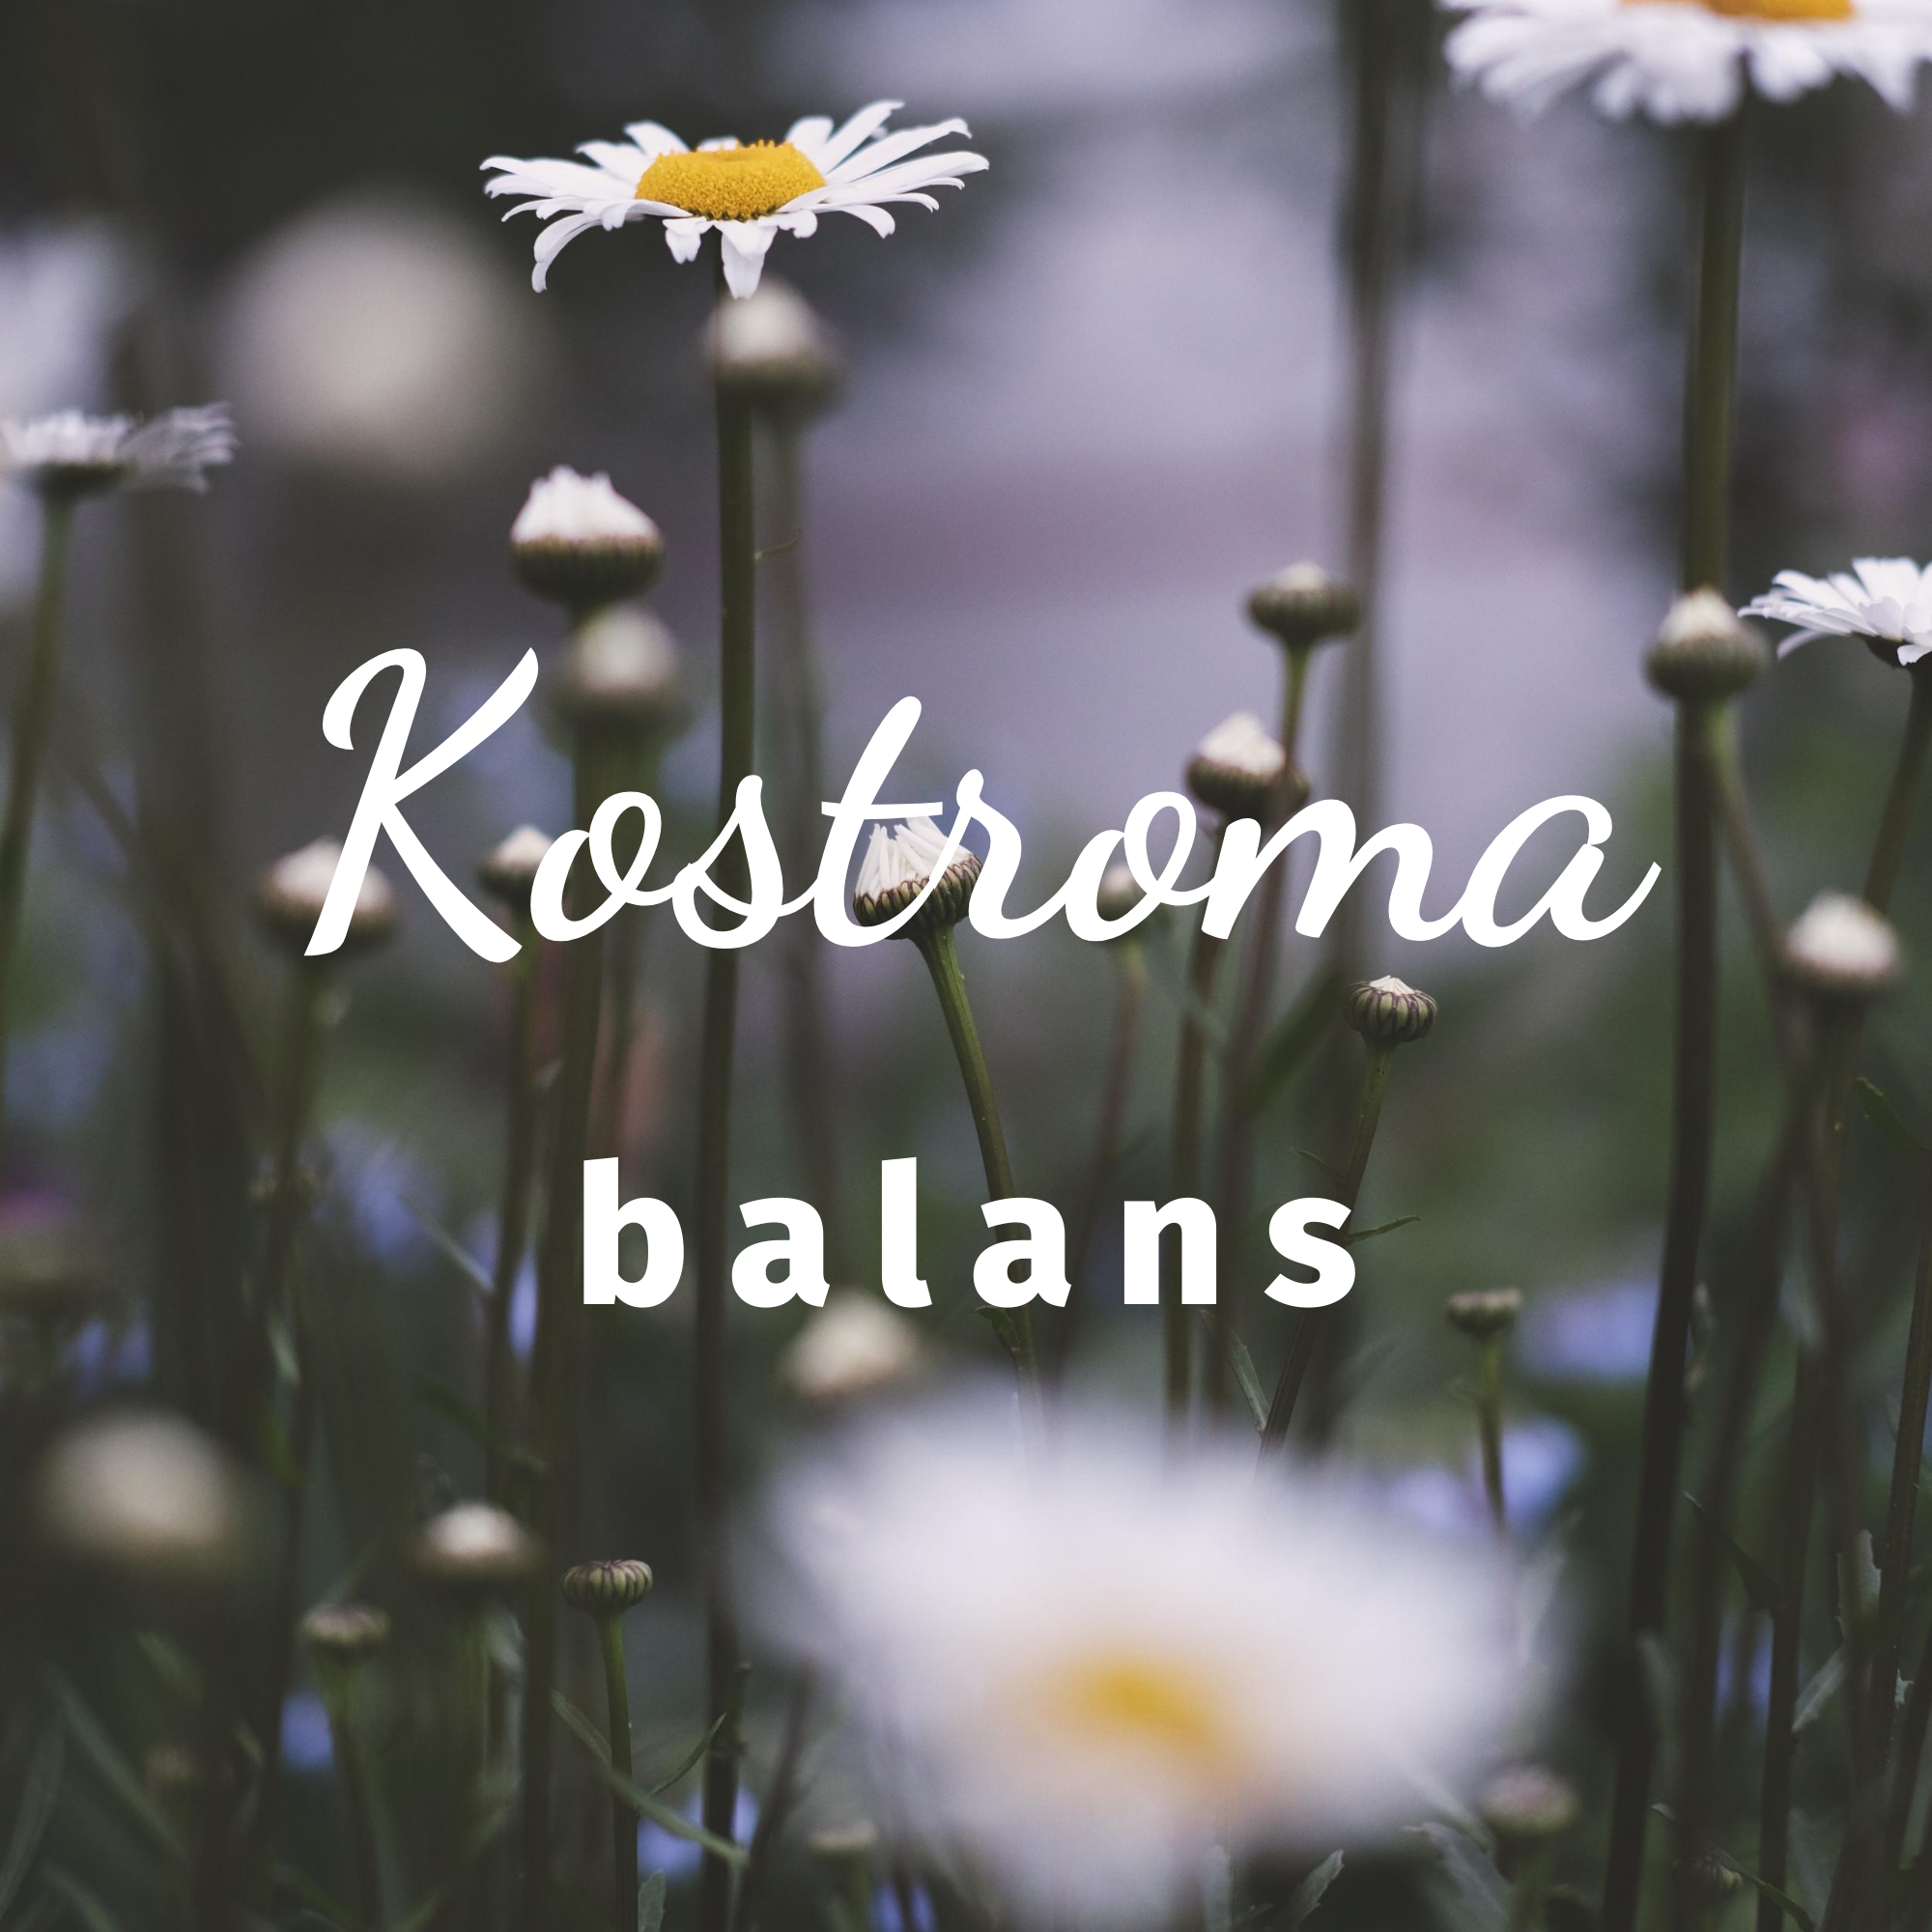 Kostroma balans